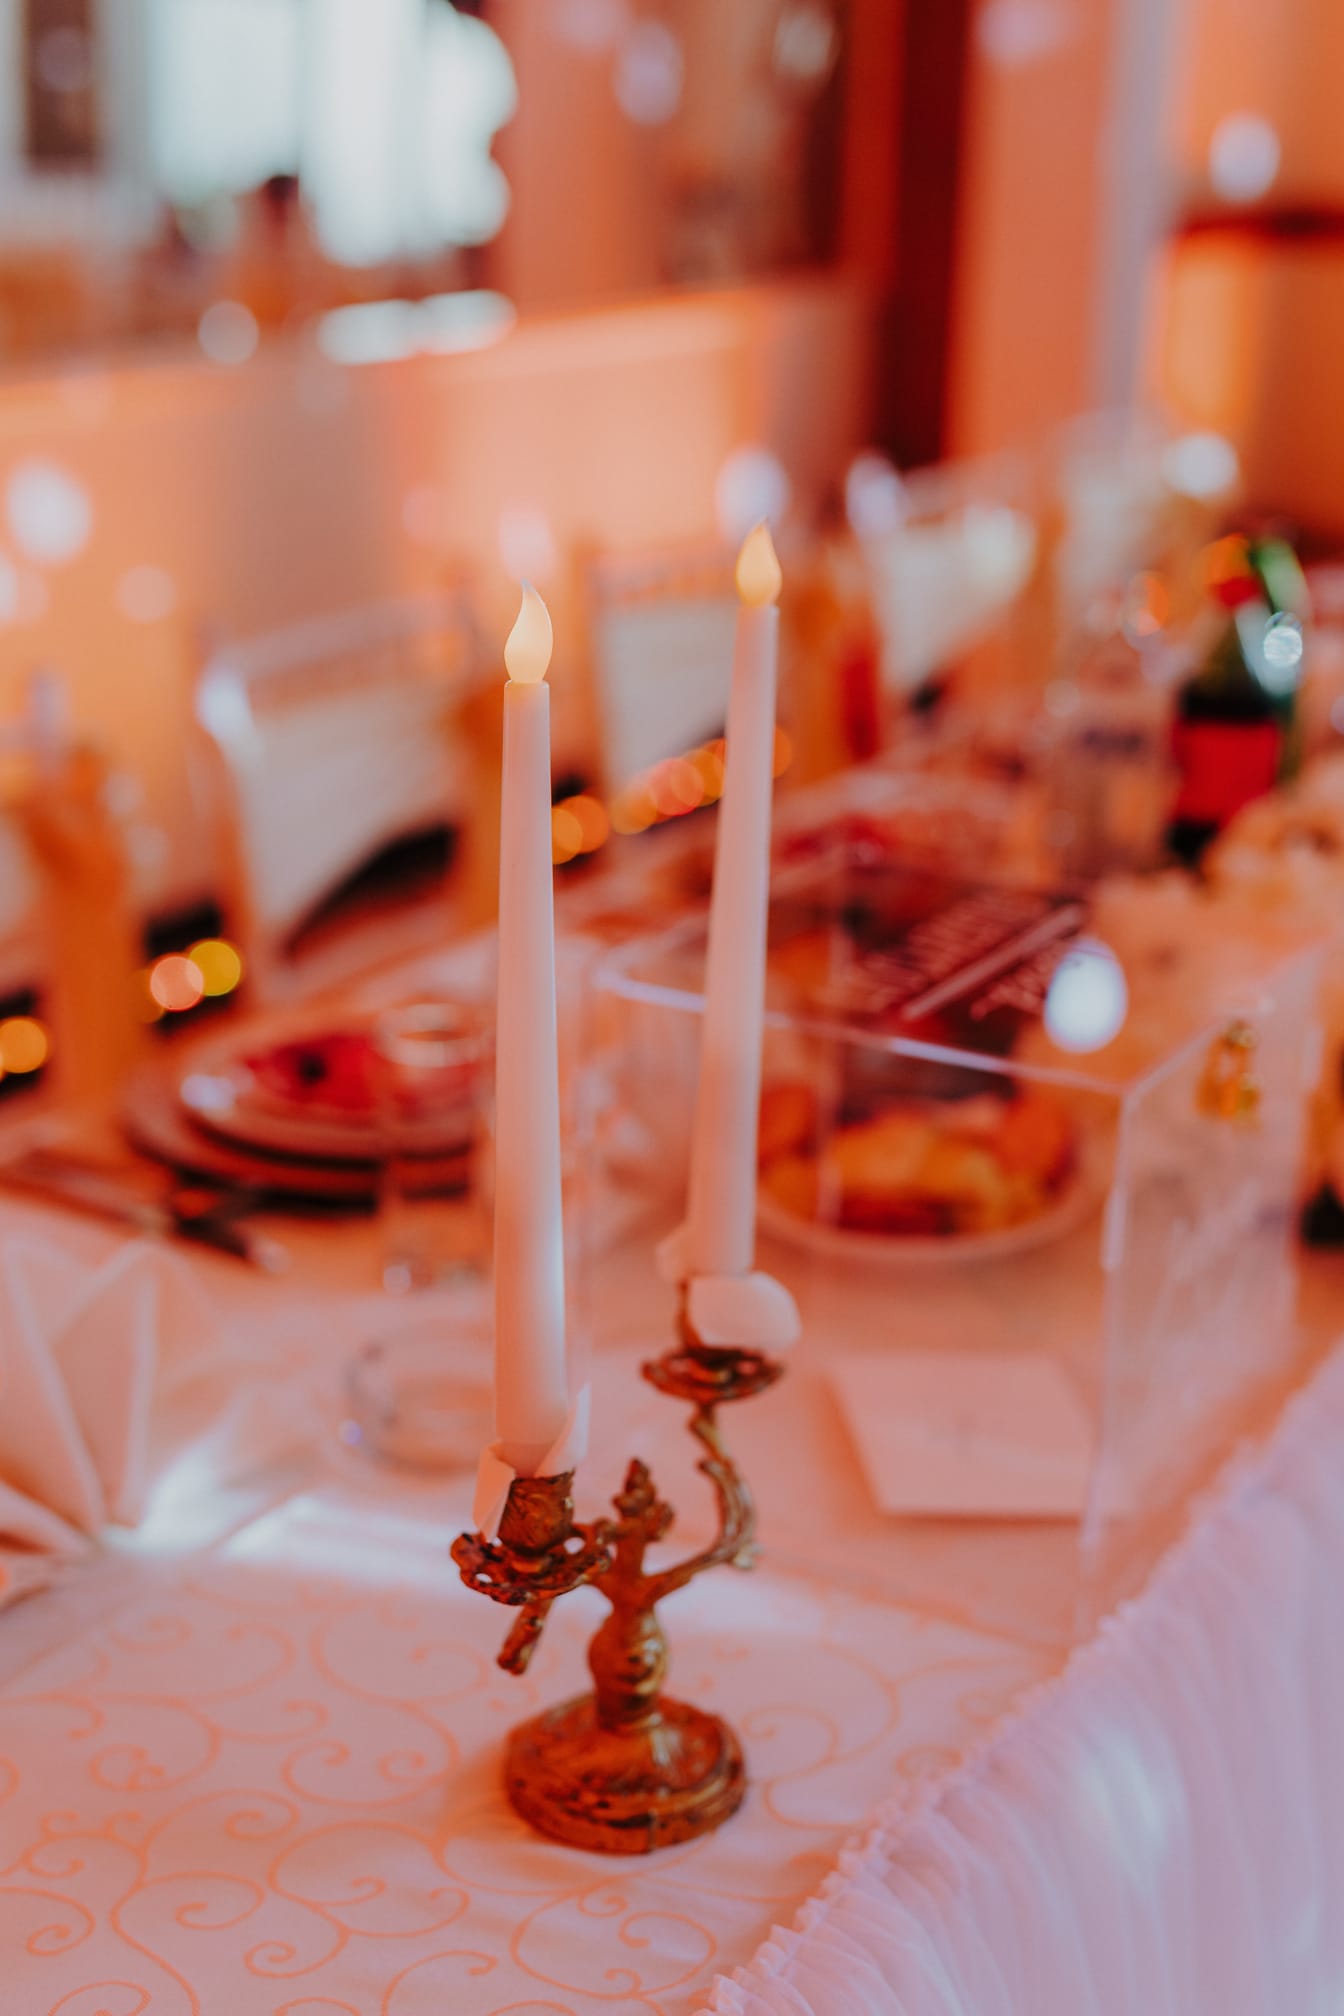 Umělé bílé svíčky s falešnými plameny na stole v místě svatby